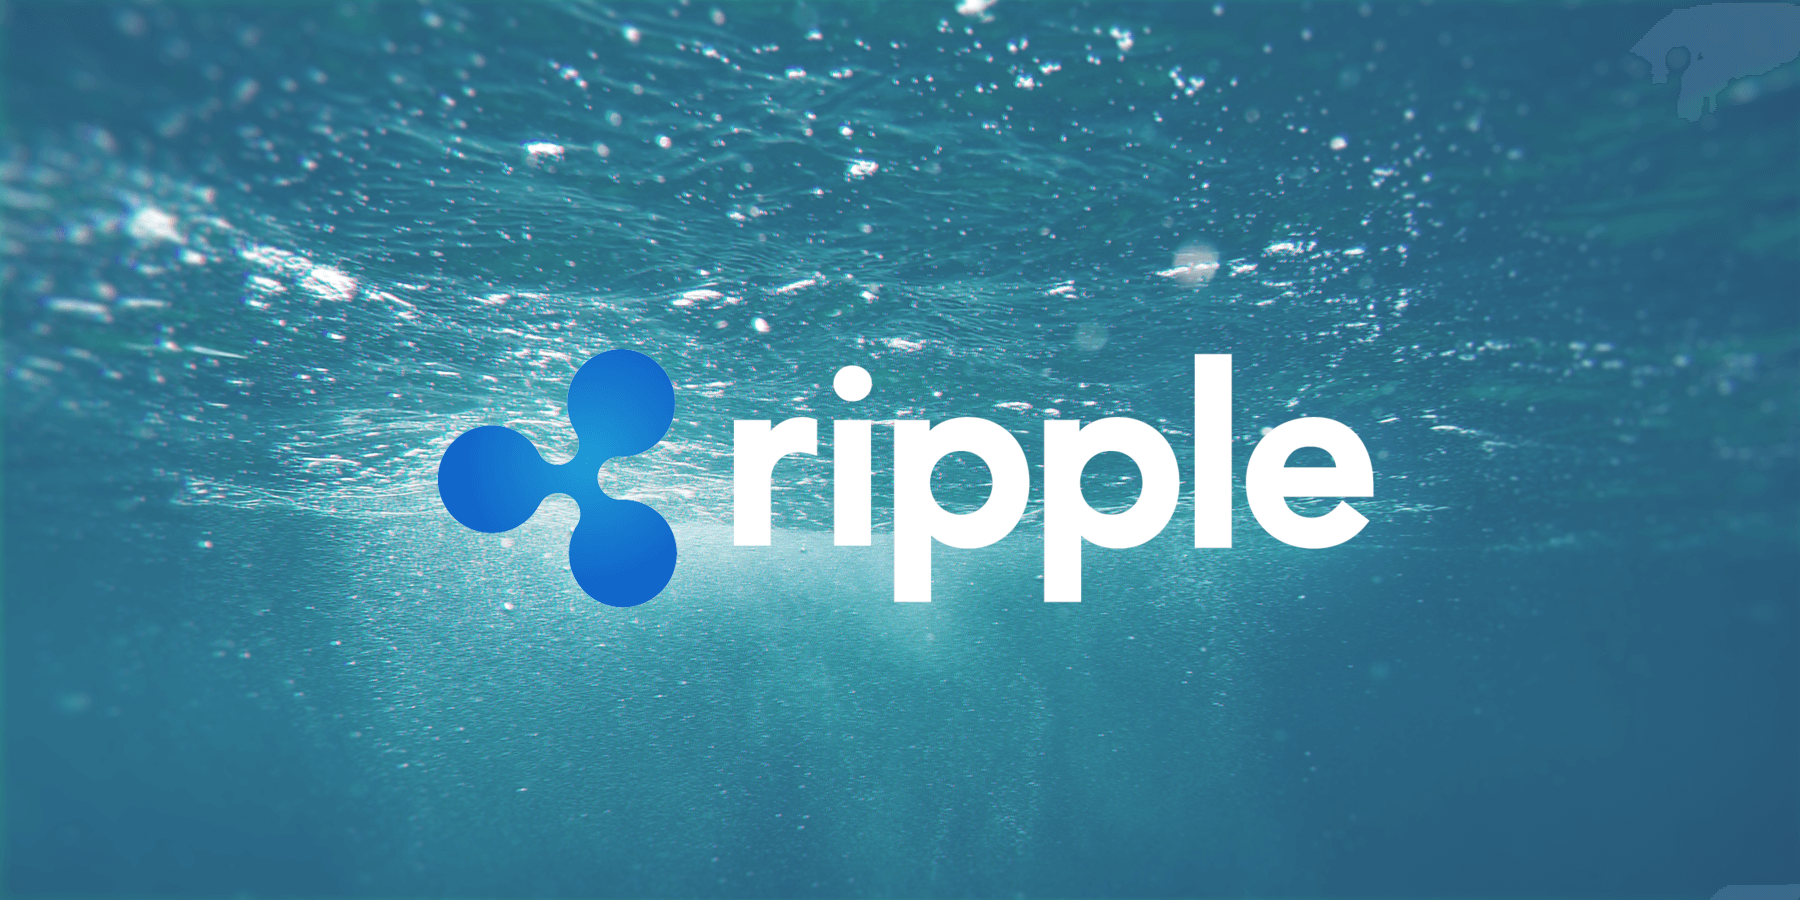 Ripple ще инвестира $1 милиард за разширяването си във финтех пространството